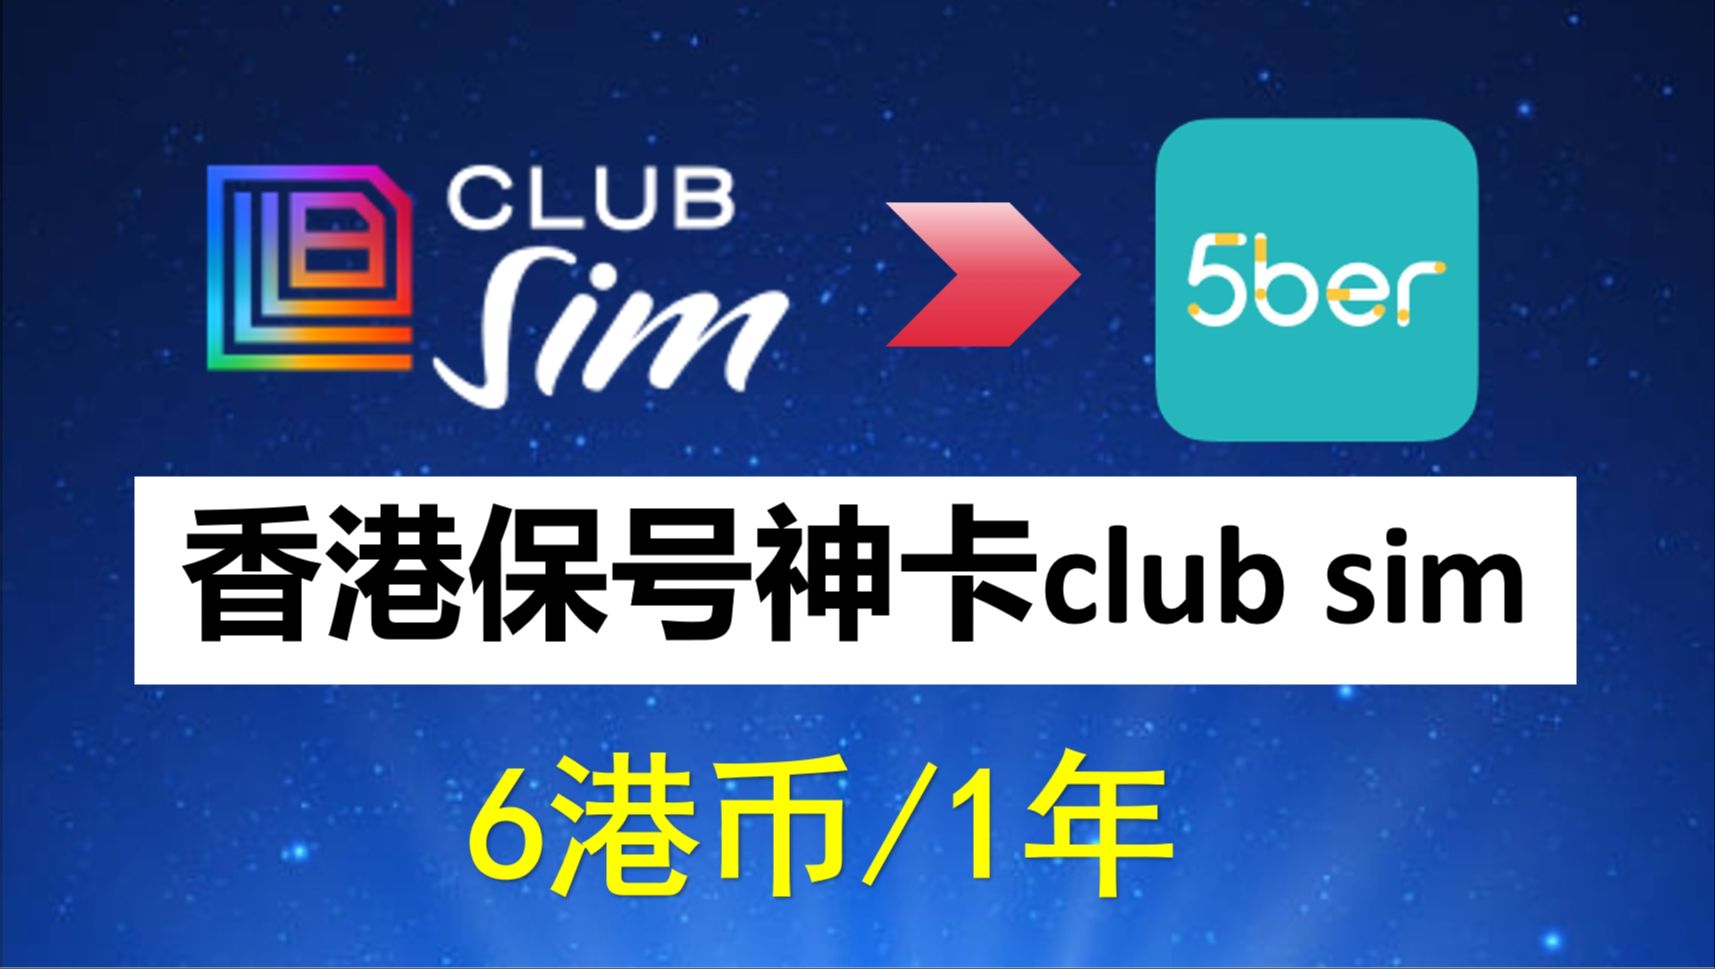 香港Club Sim保号手机卡全教程、6港币，注册、购买、使用、0月租、免费接收短信、 课金易如何充值？港区apple id充值? 如何购买5ber